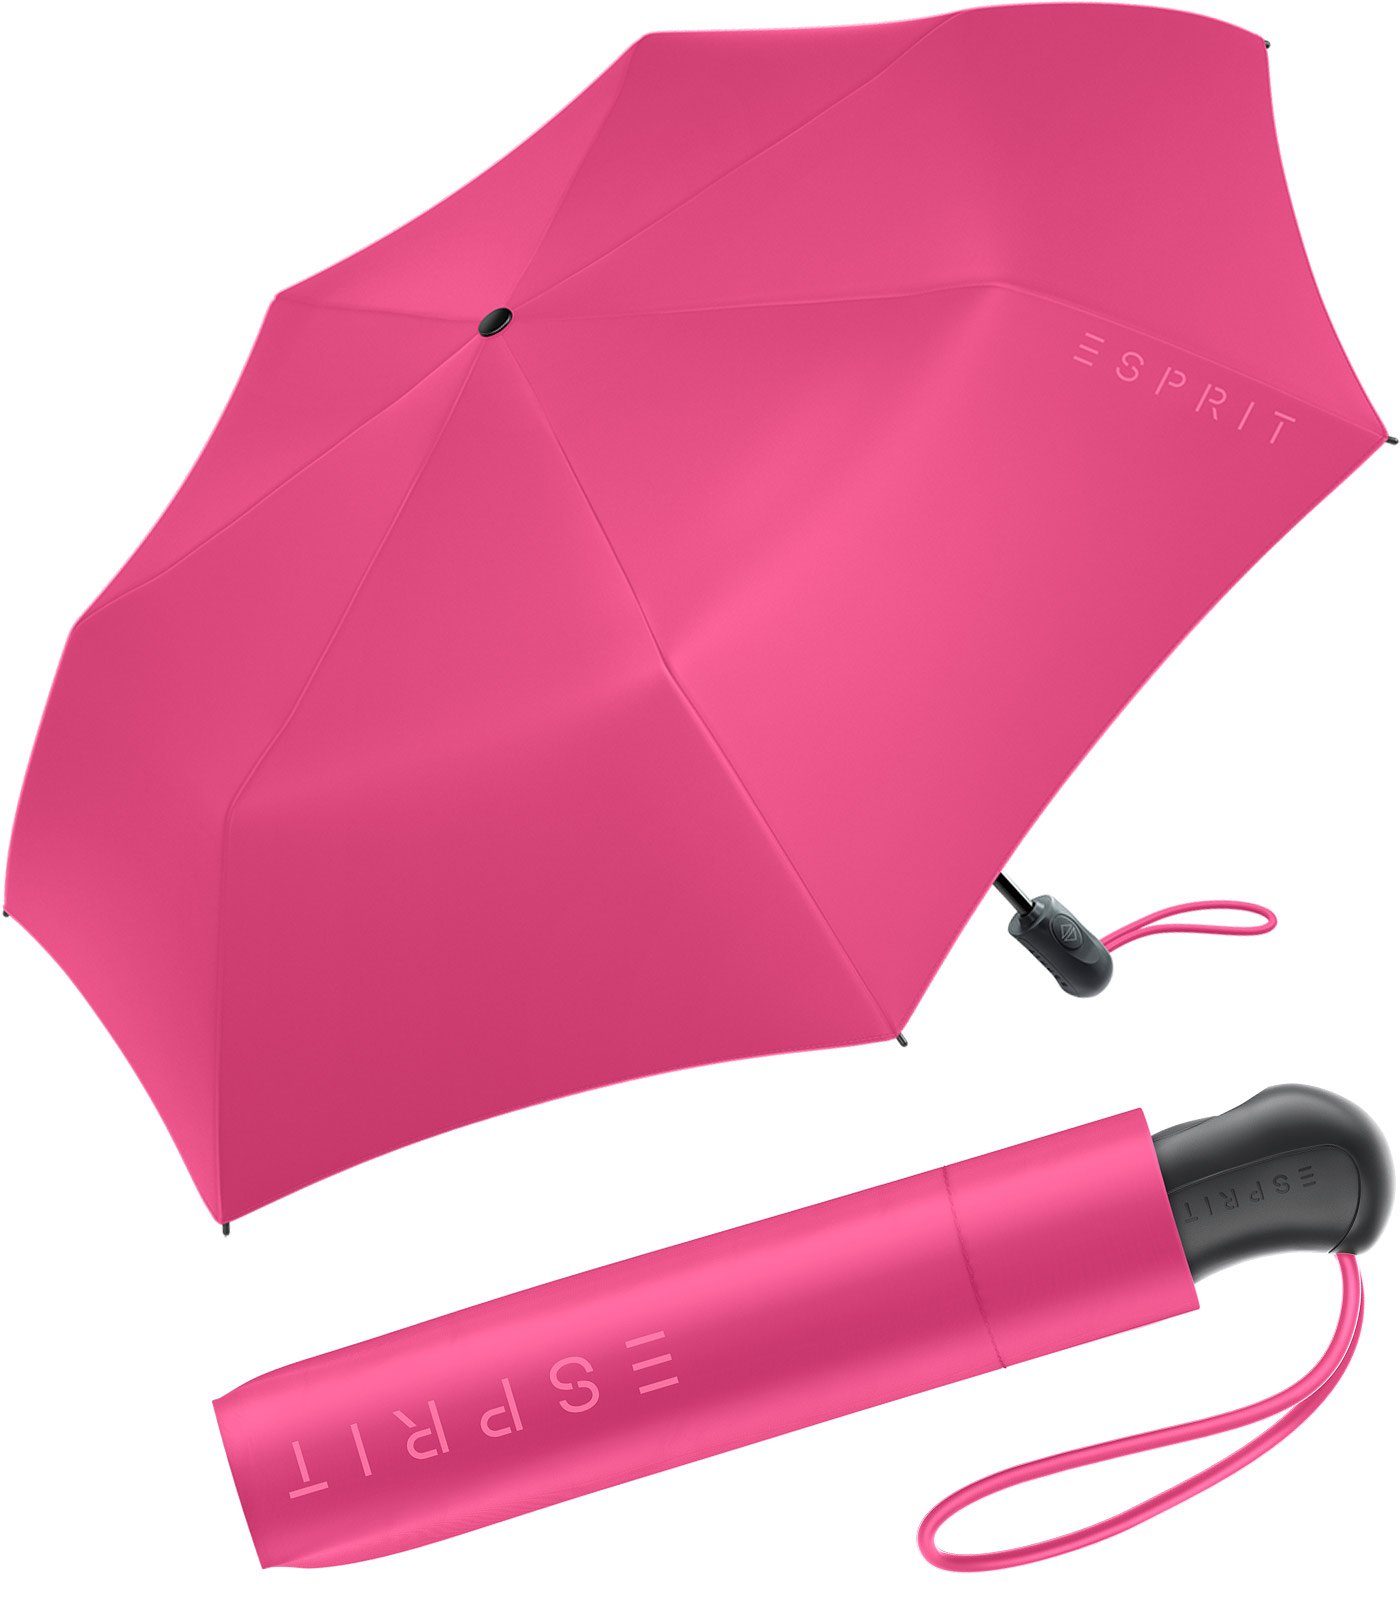 Esprit Langregenschirm Damen Easymatic Light Auf-Zu Automatik HW 2023, in den neuen Trendfarben - magenta rosa